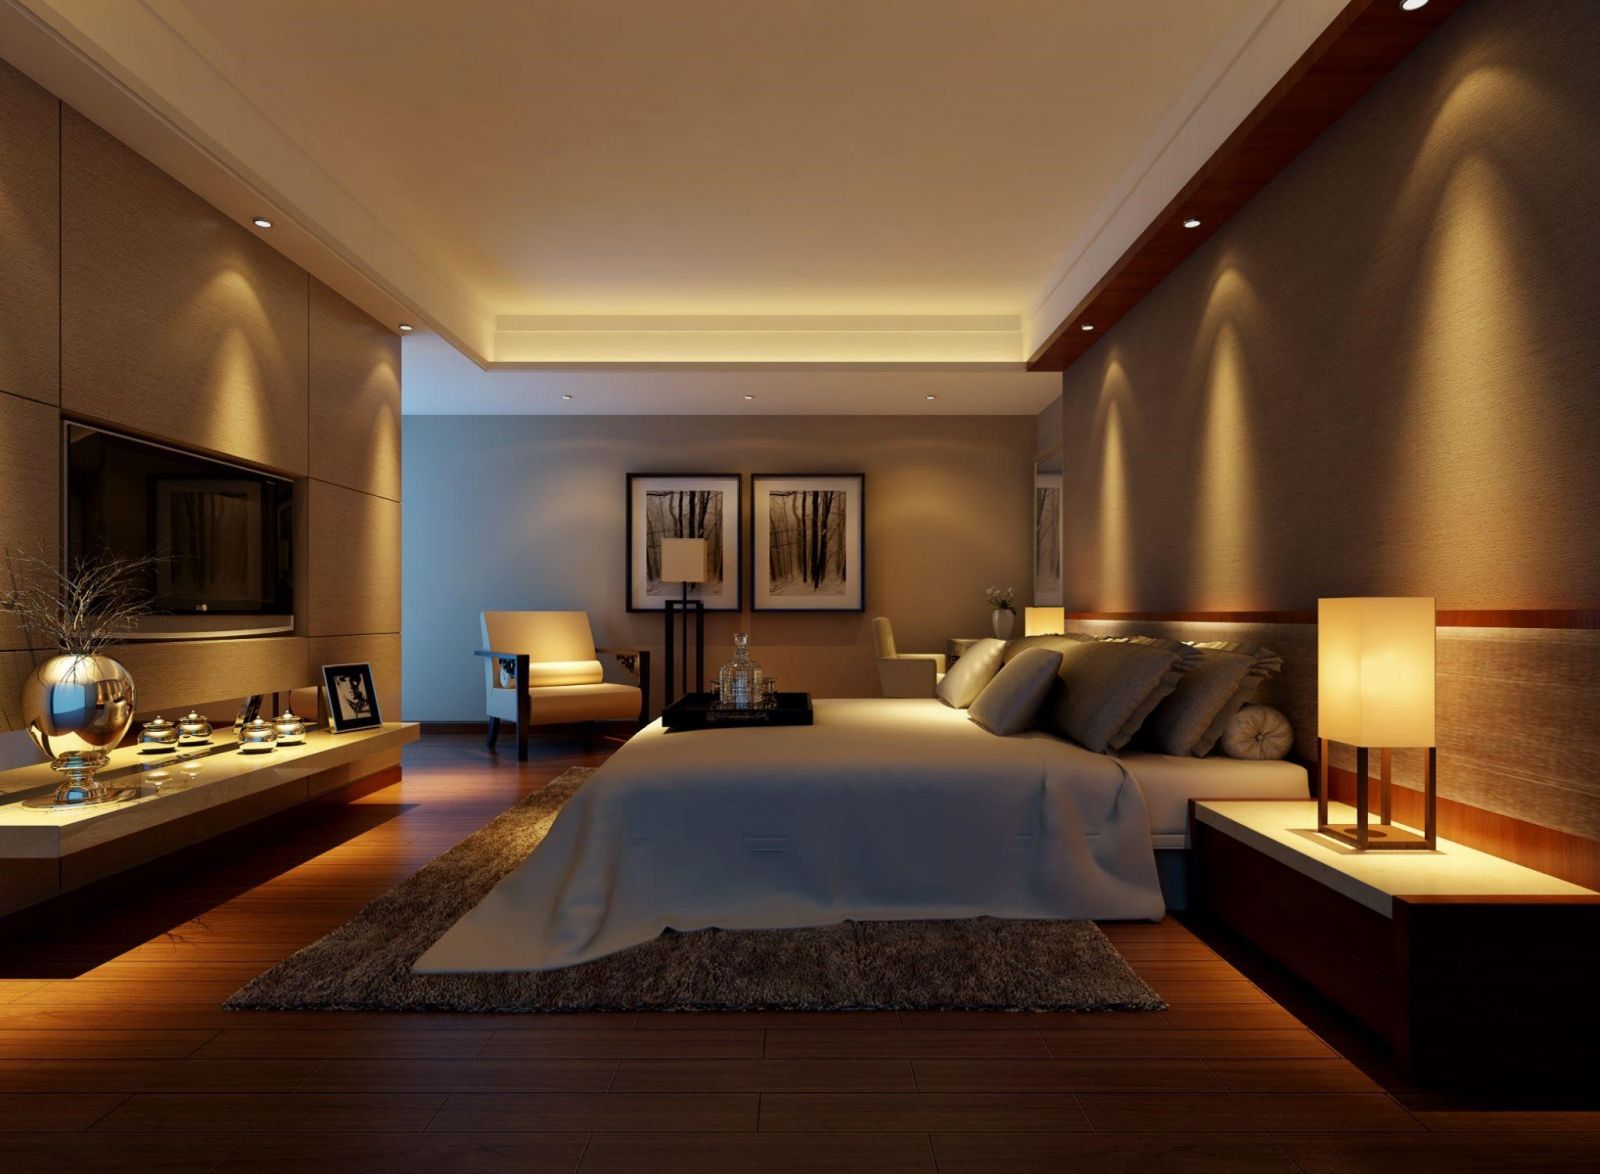 Bạn muốn có một phòng ngủ đẹp, tiện nghi và sang trọng? Hãy xem hình ảnh về phòng ngủ với trần thạch cao độc đáo và tinh tế, sử dụng đèn led màu làm điểm nhấn làm tăng sự ấm áp cho không gian của gia đình bạn.